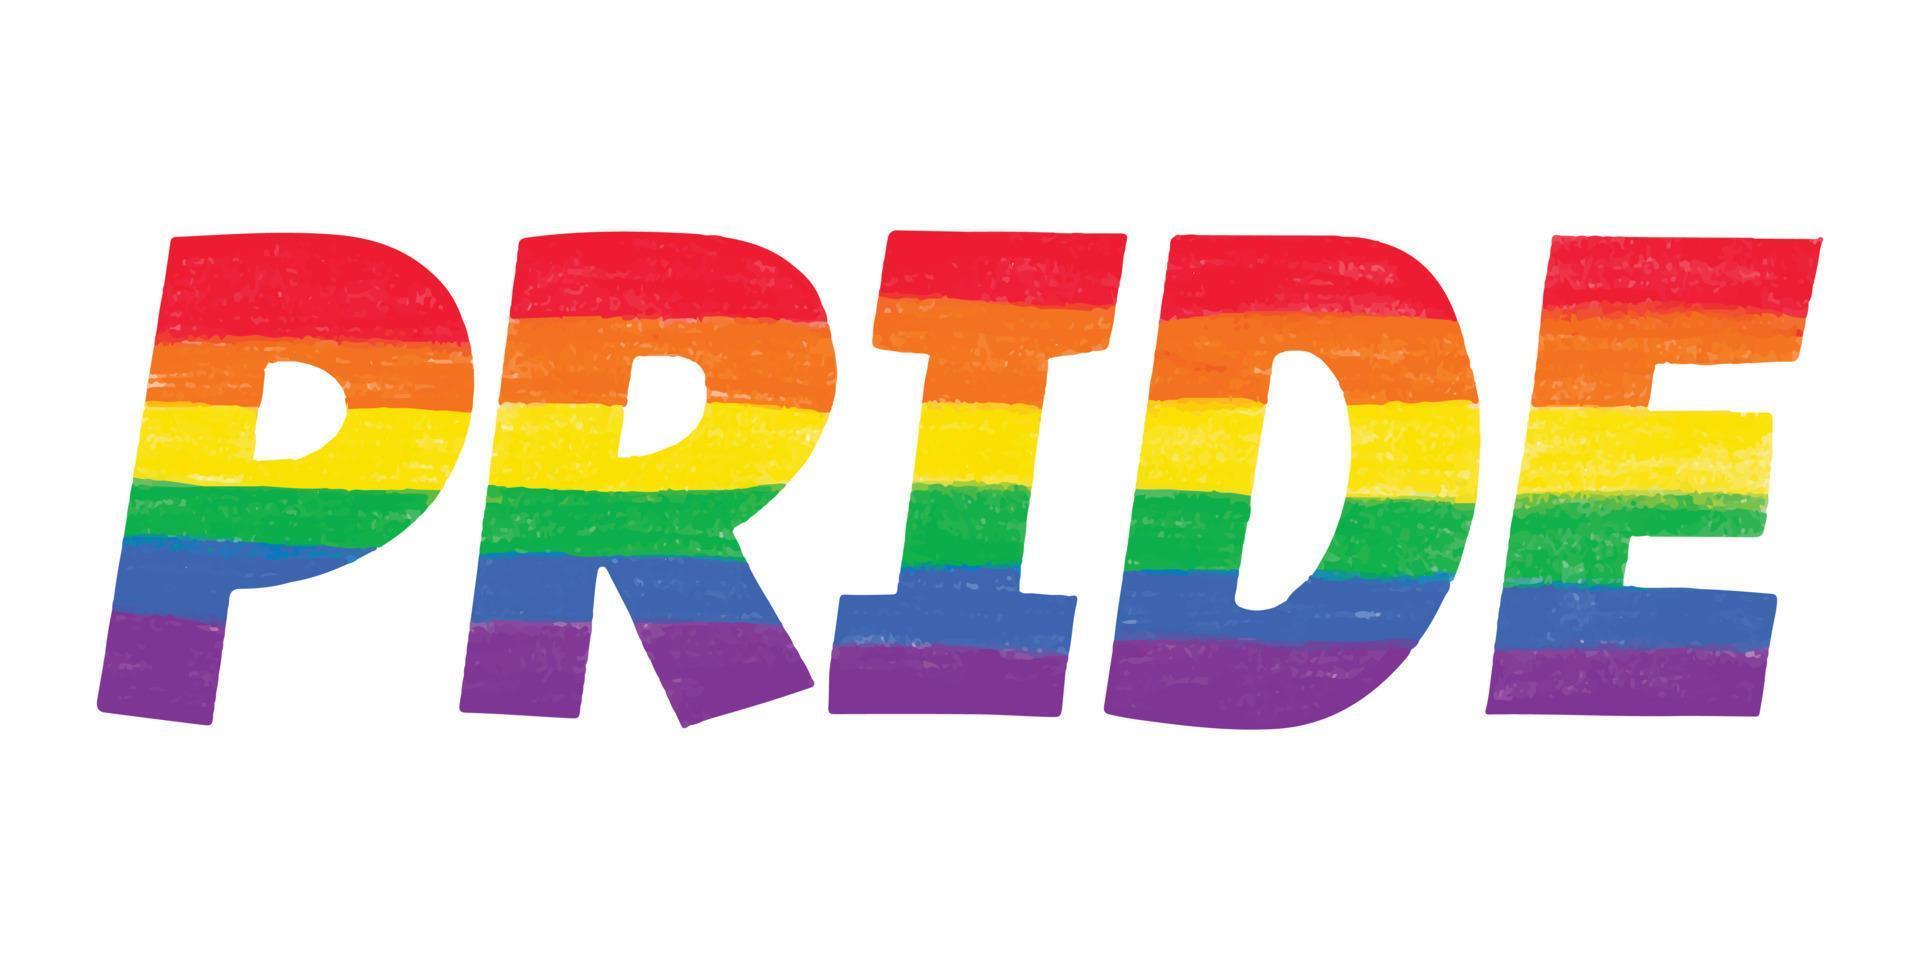 woord trots gekleurd in regenboog lgbtq gay pride vlagkleuren. vector belettering voor lgbt geschiedenis maand potlood krijt getextureerde geïsoleerd. liefde is liefde concept